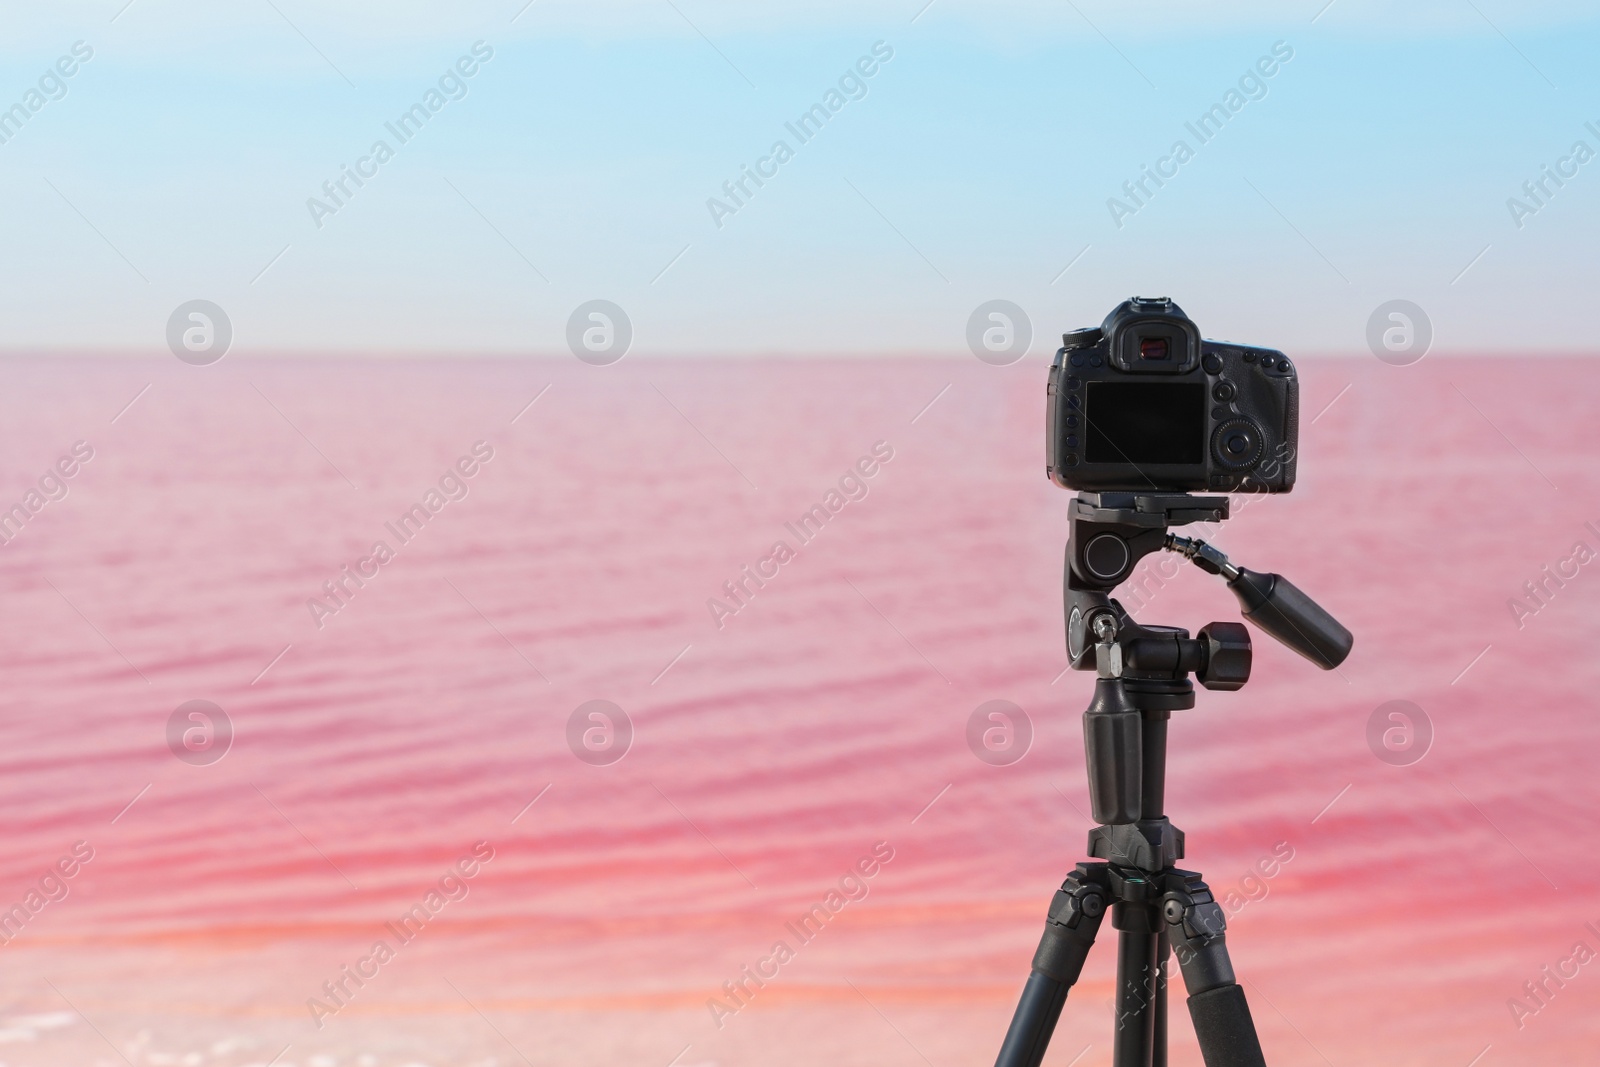 Photo of Professional camera on tripod near pink lake